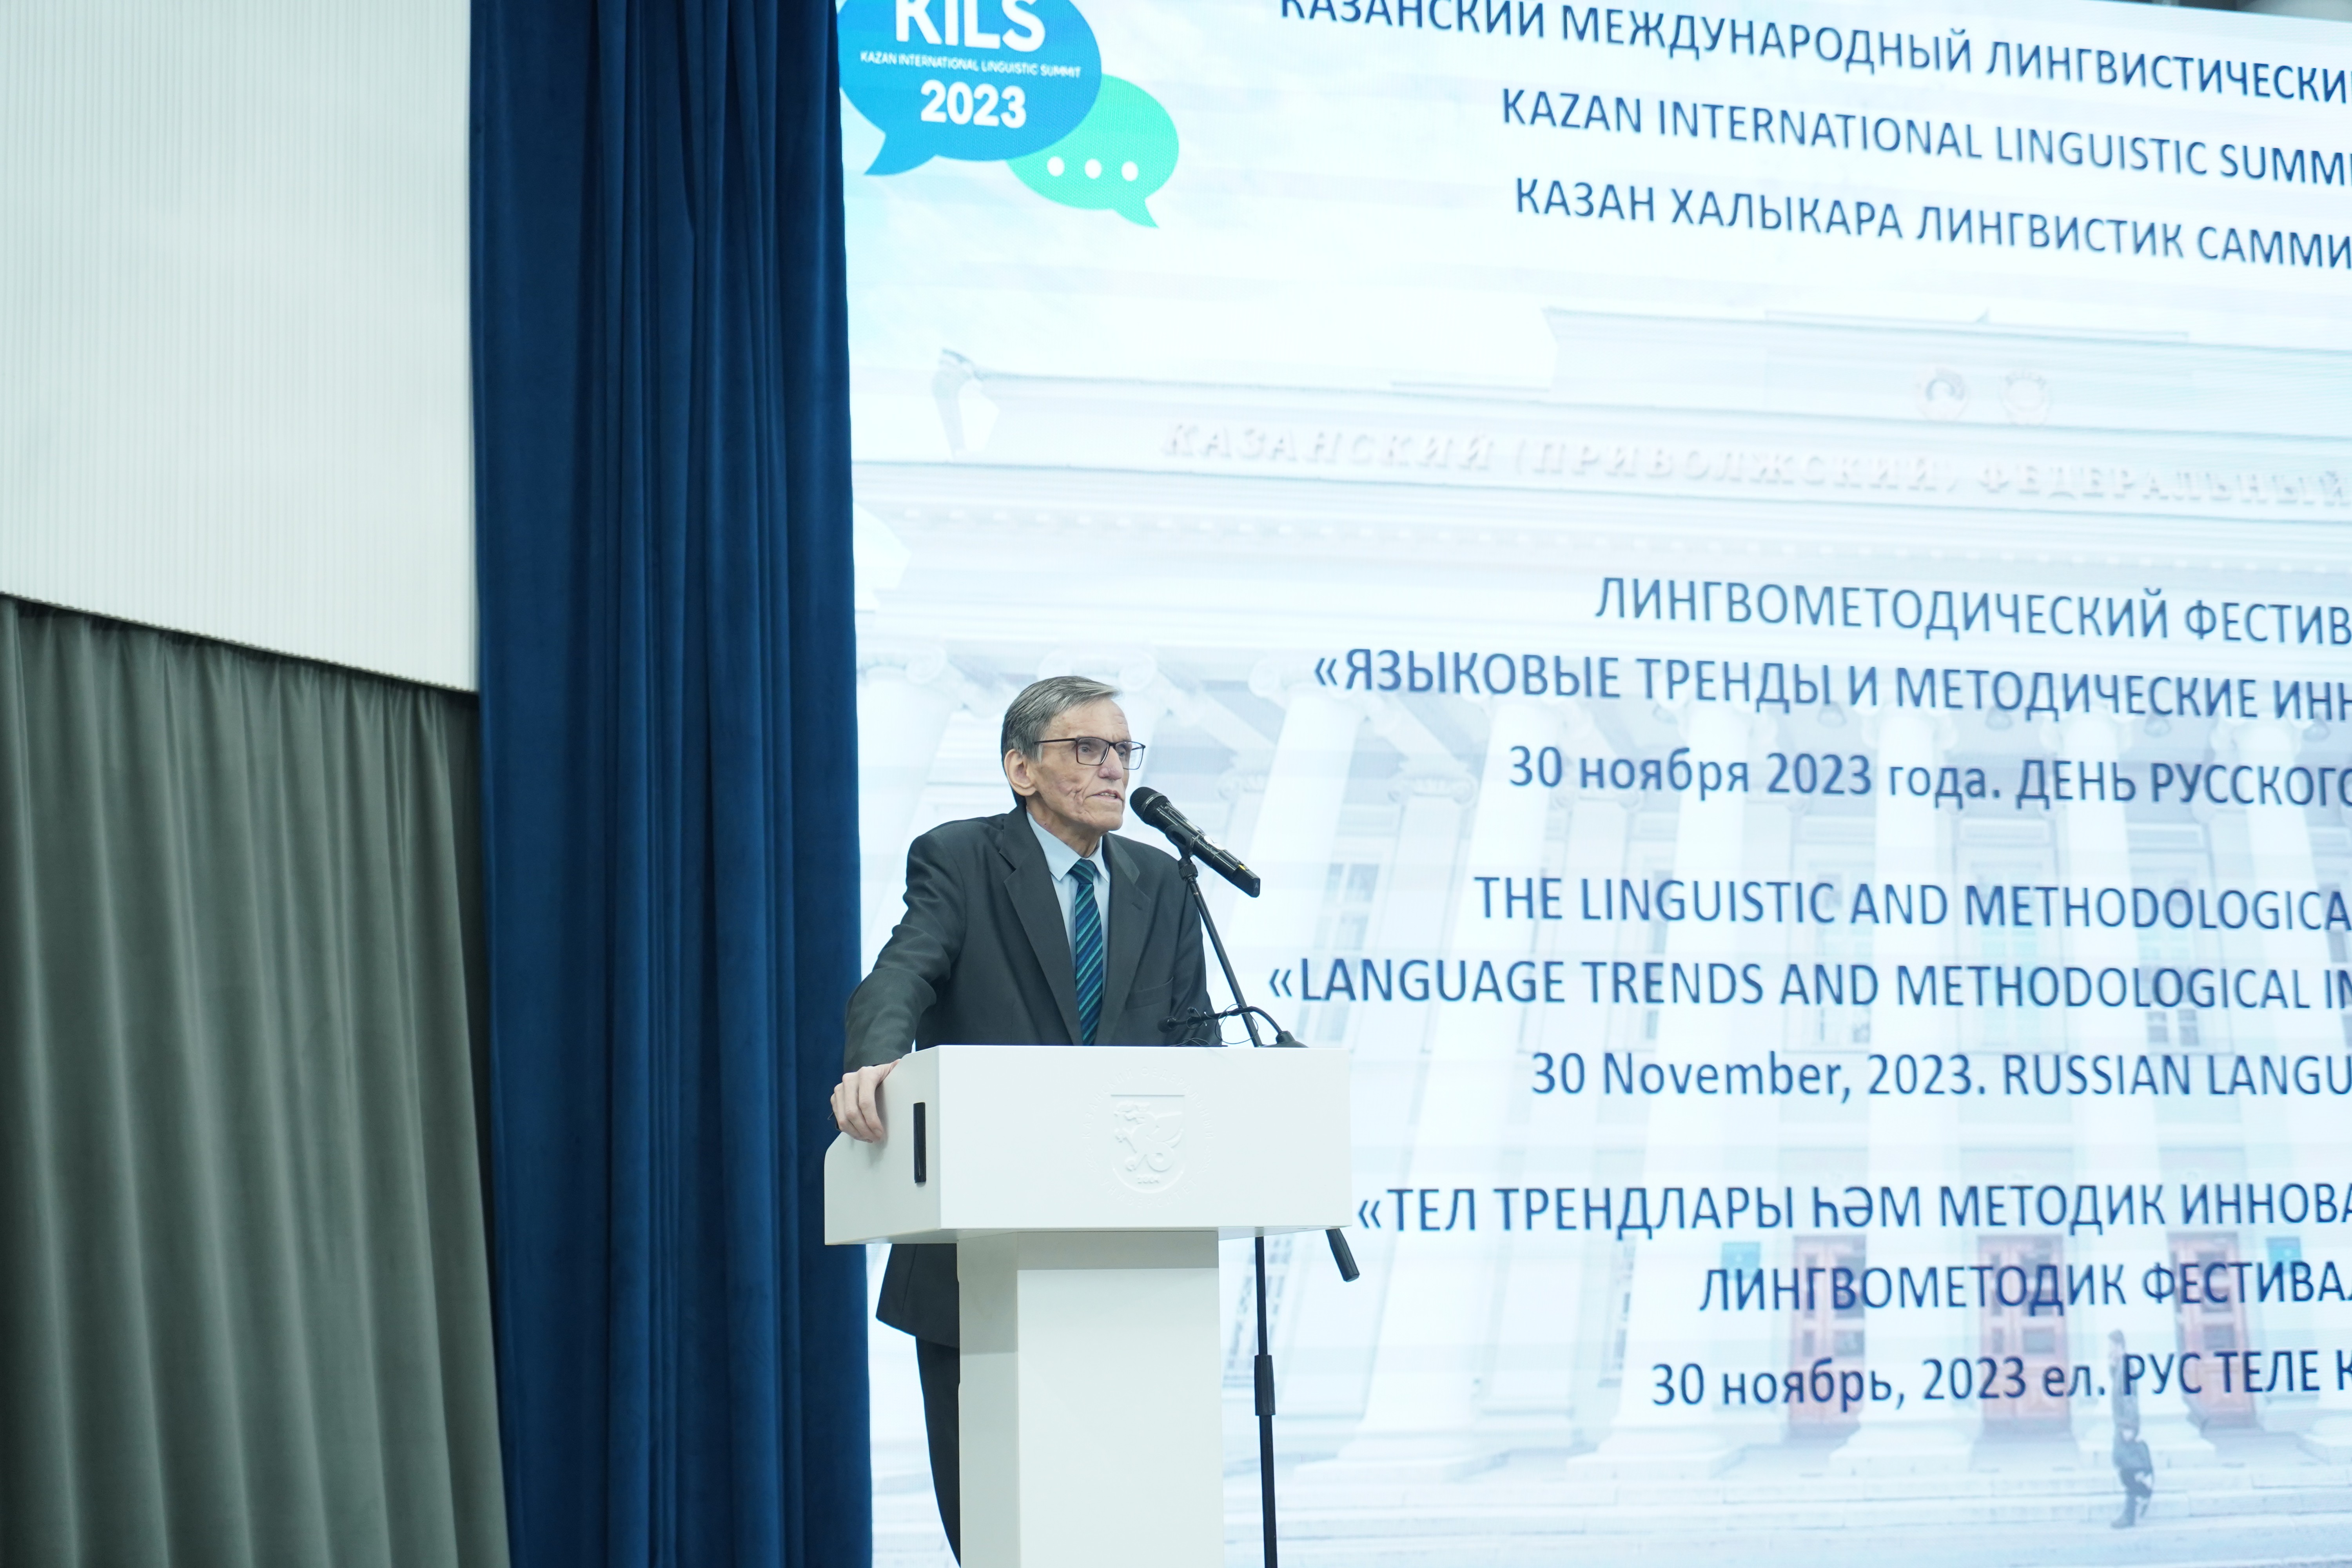 В ИФМК дан старт Казанскому международному лингвистическому саммиту ,В ИФМК дан старт Казанскому международному лингвистическому саммиту